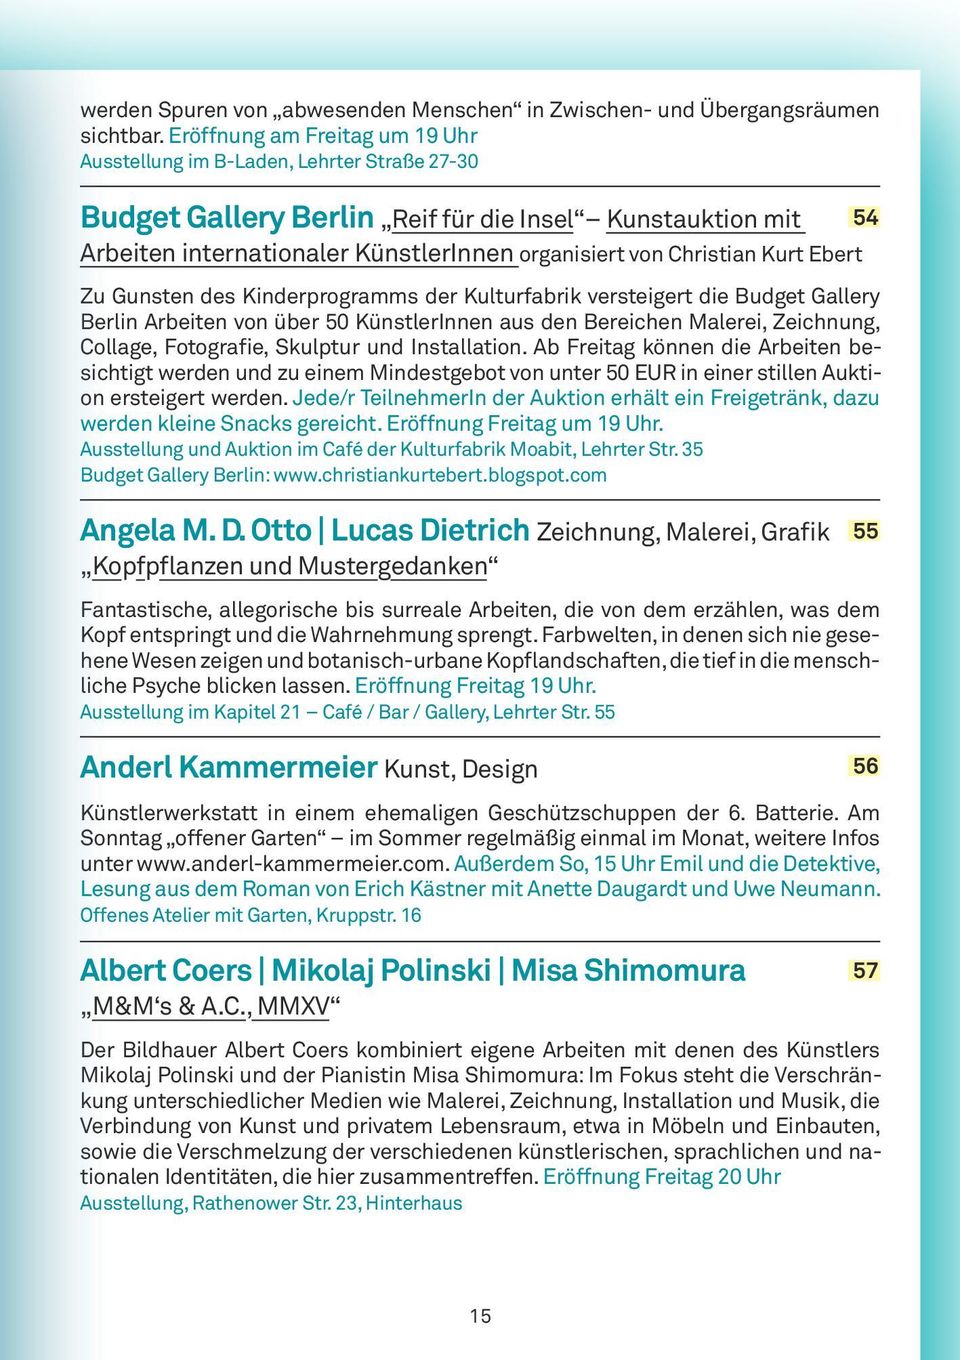 Kurt Ebert Zu Gunsten des Kinderprogramms der Kulturfabrik versteigert die Budget Gallery Berlin Arbeiten von über 50 KünstlerInnen aus den Bereichen Malerei, Zeichnung, Collage, Fotografie, Skulptur